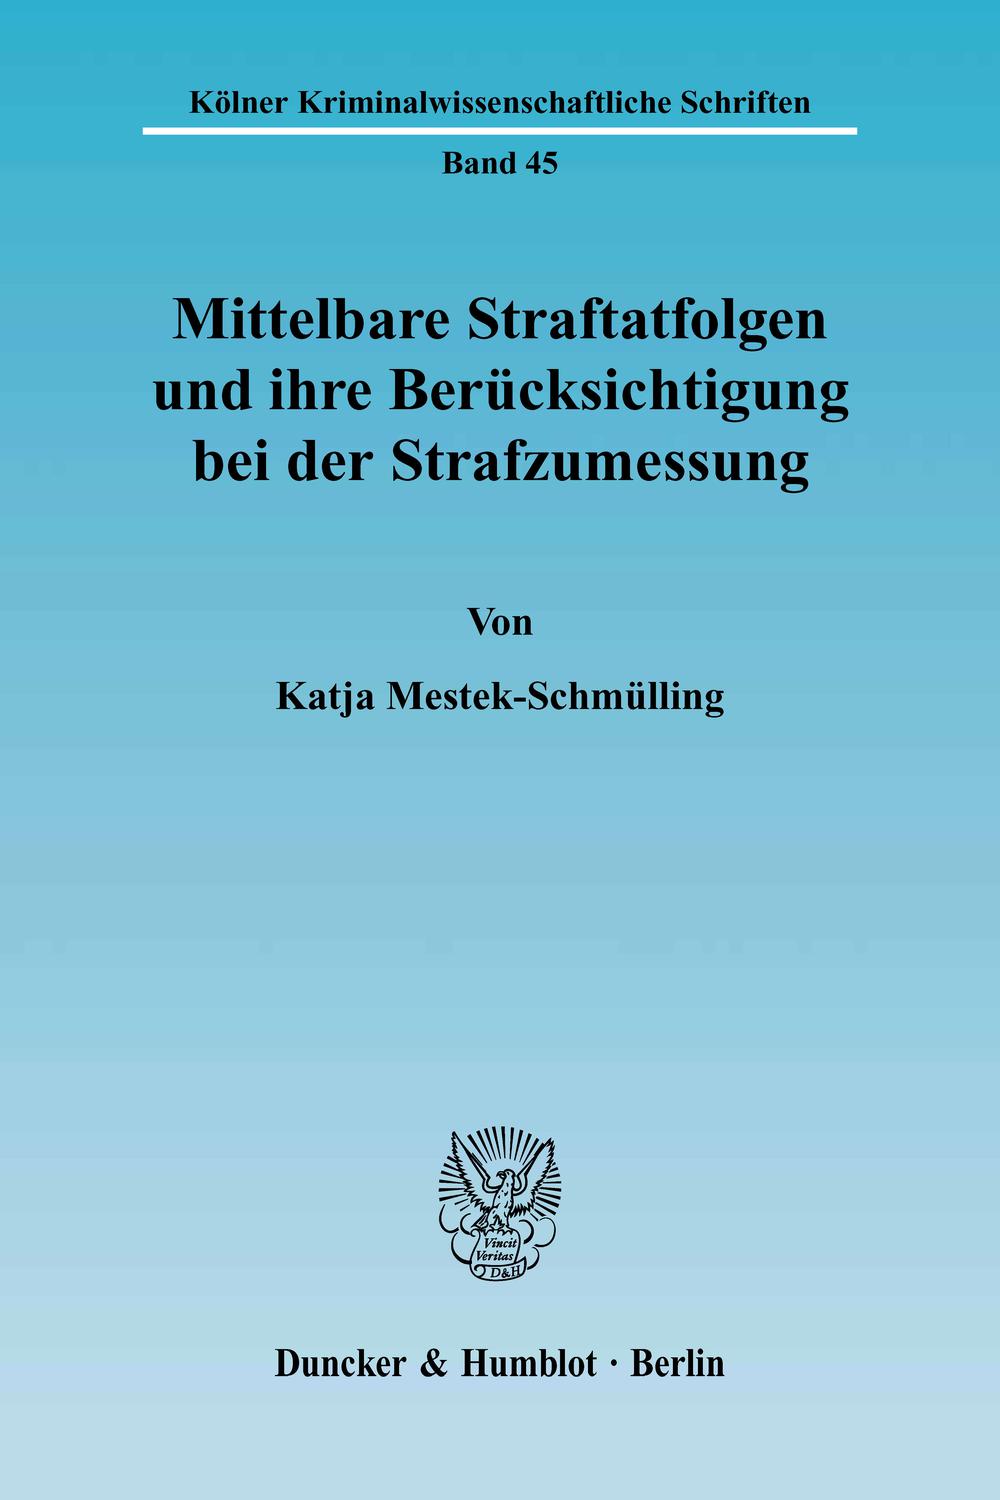 Mittelbare Straftatfolgen und ihre Berücksichtigung bei der Strafzumessung. - Katja Mestek-Schmülling